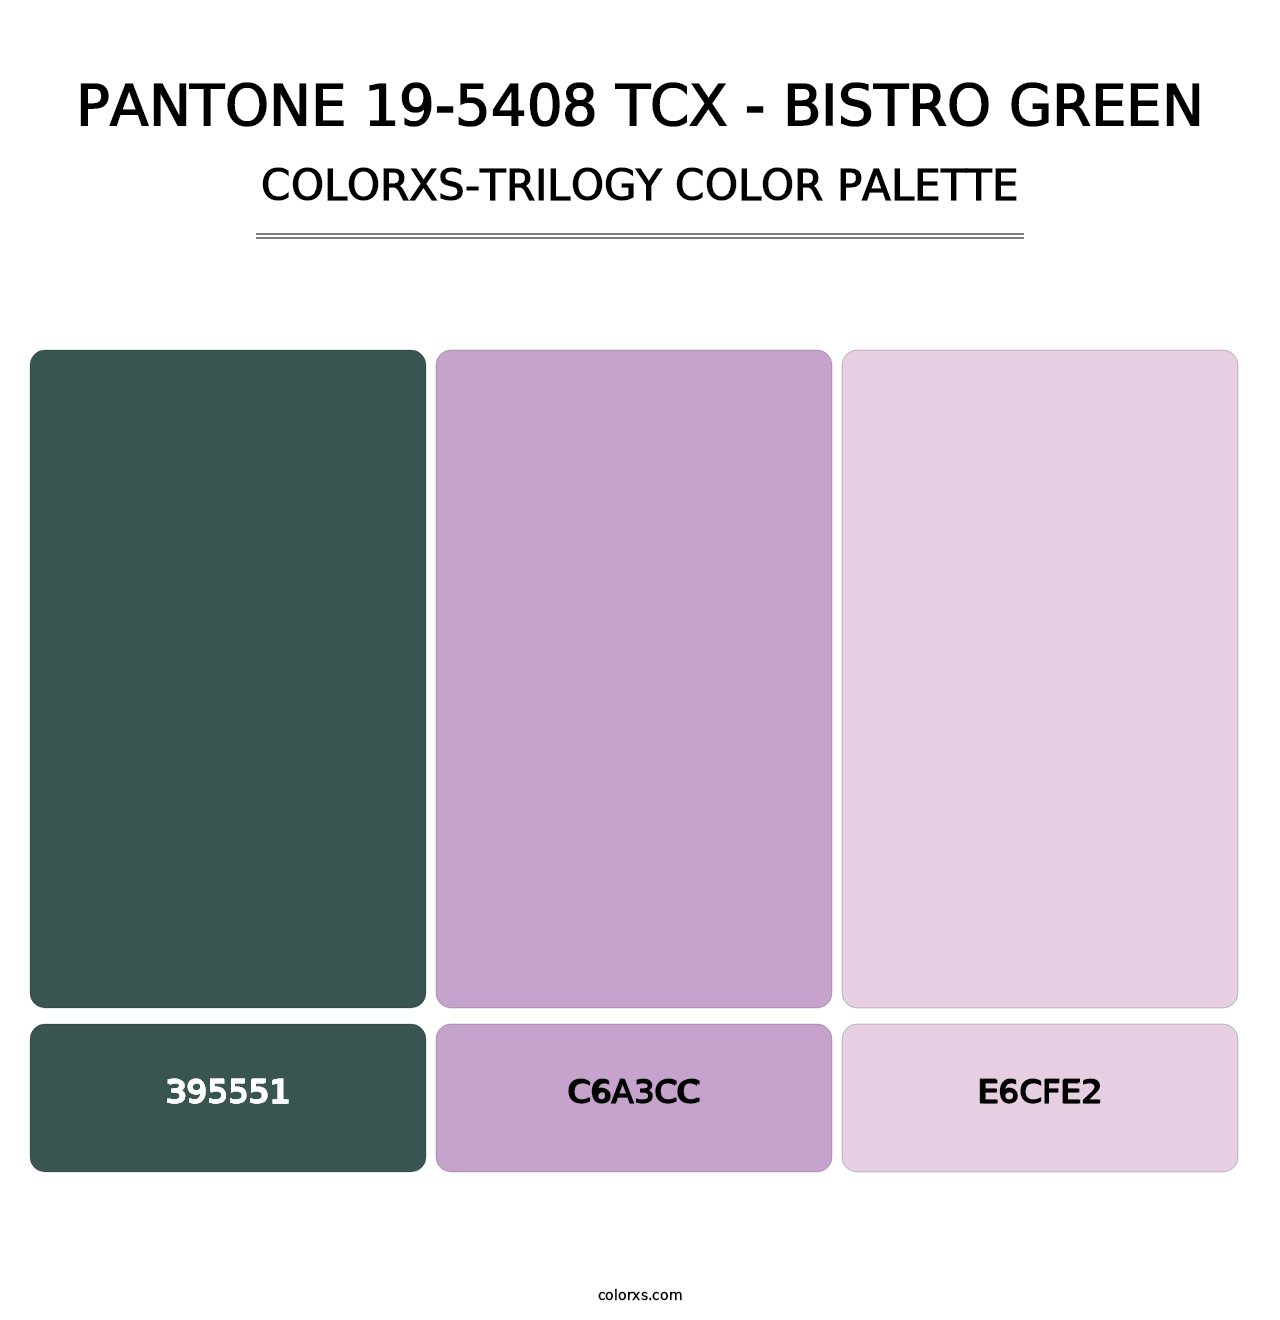 PANTONE 19-5408 TCX - Bistro Green - Colorxs Trilogy Palette